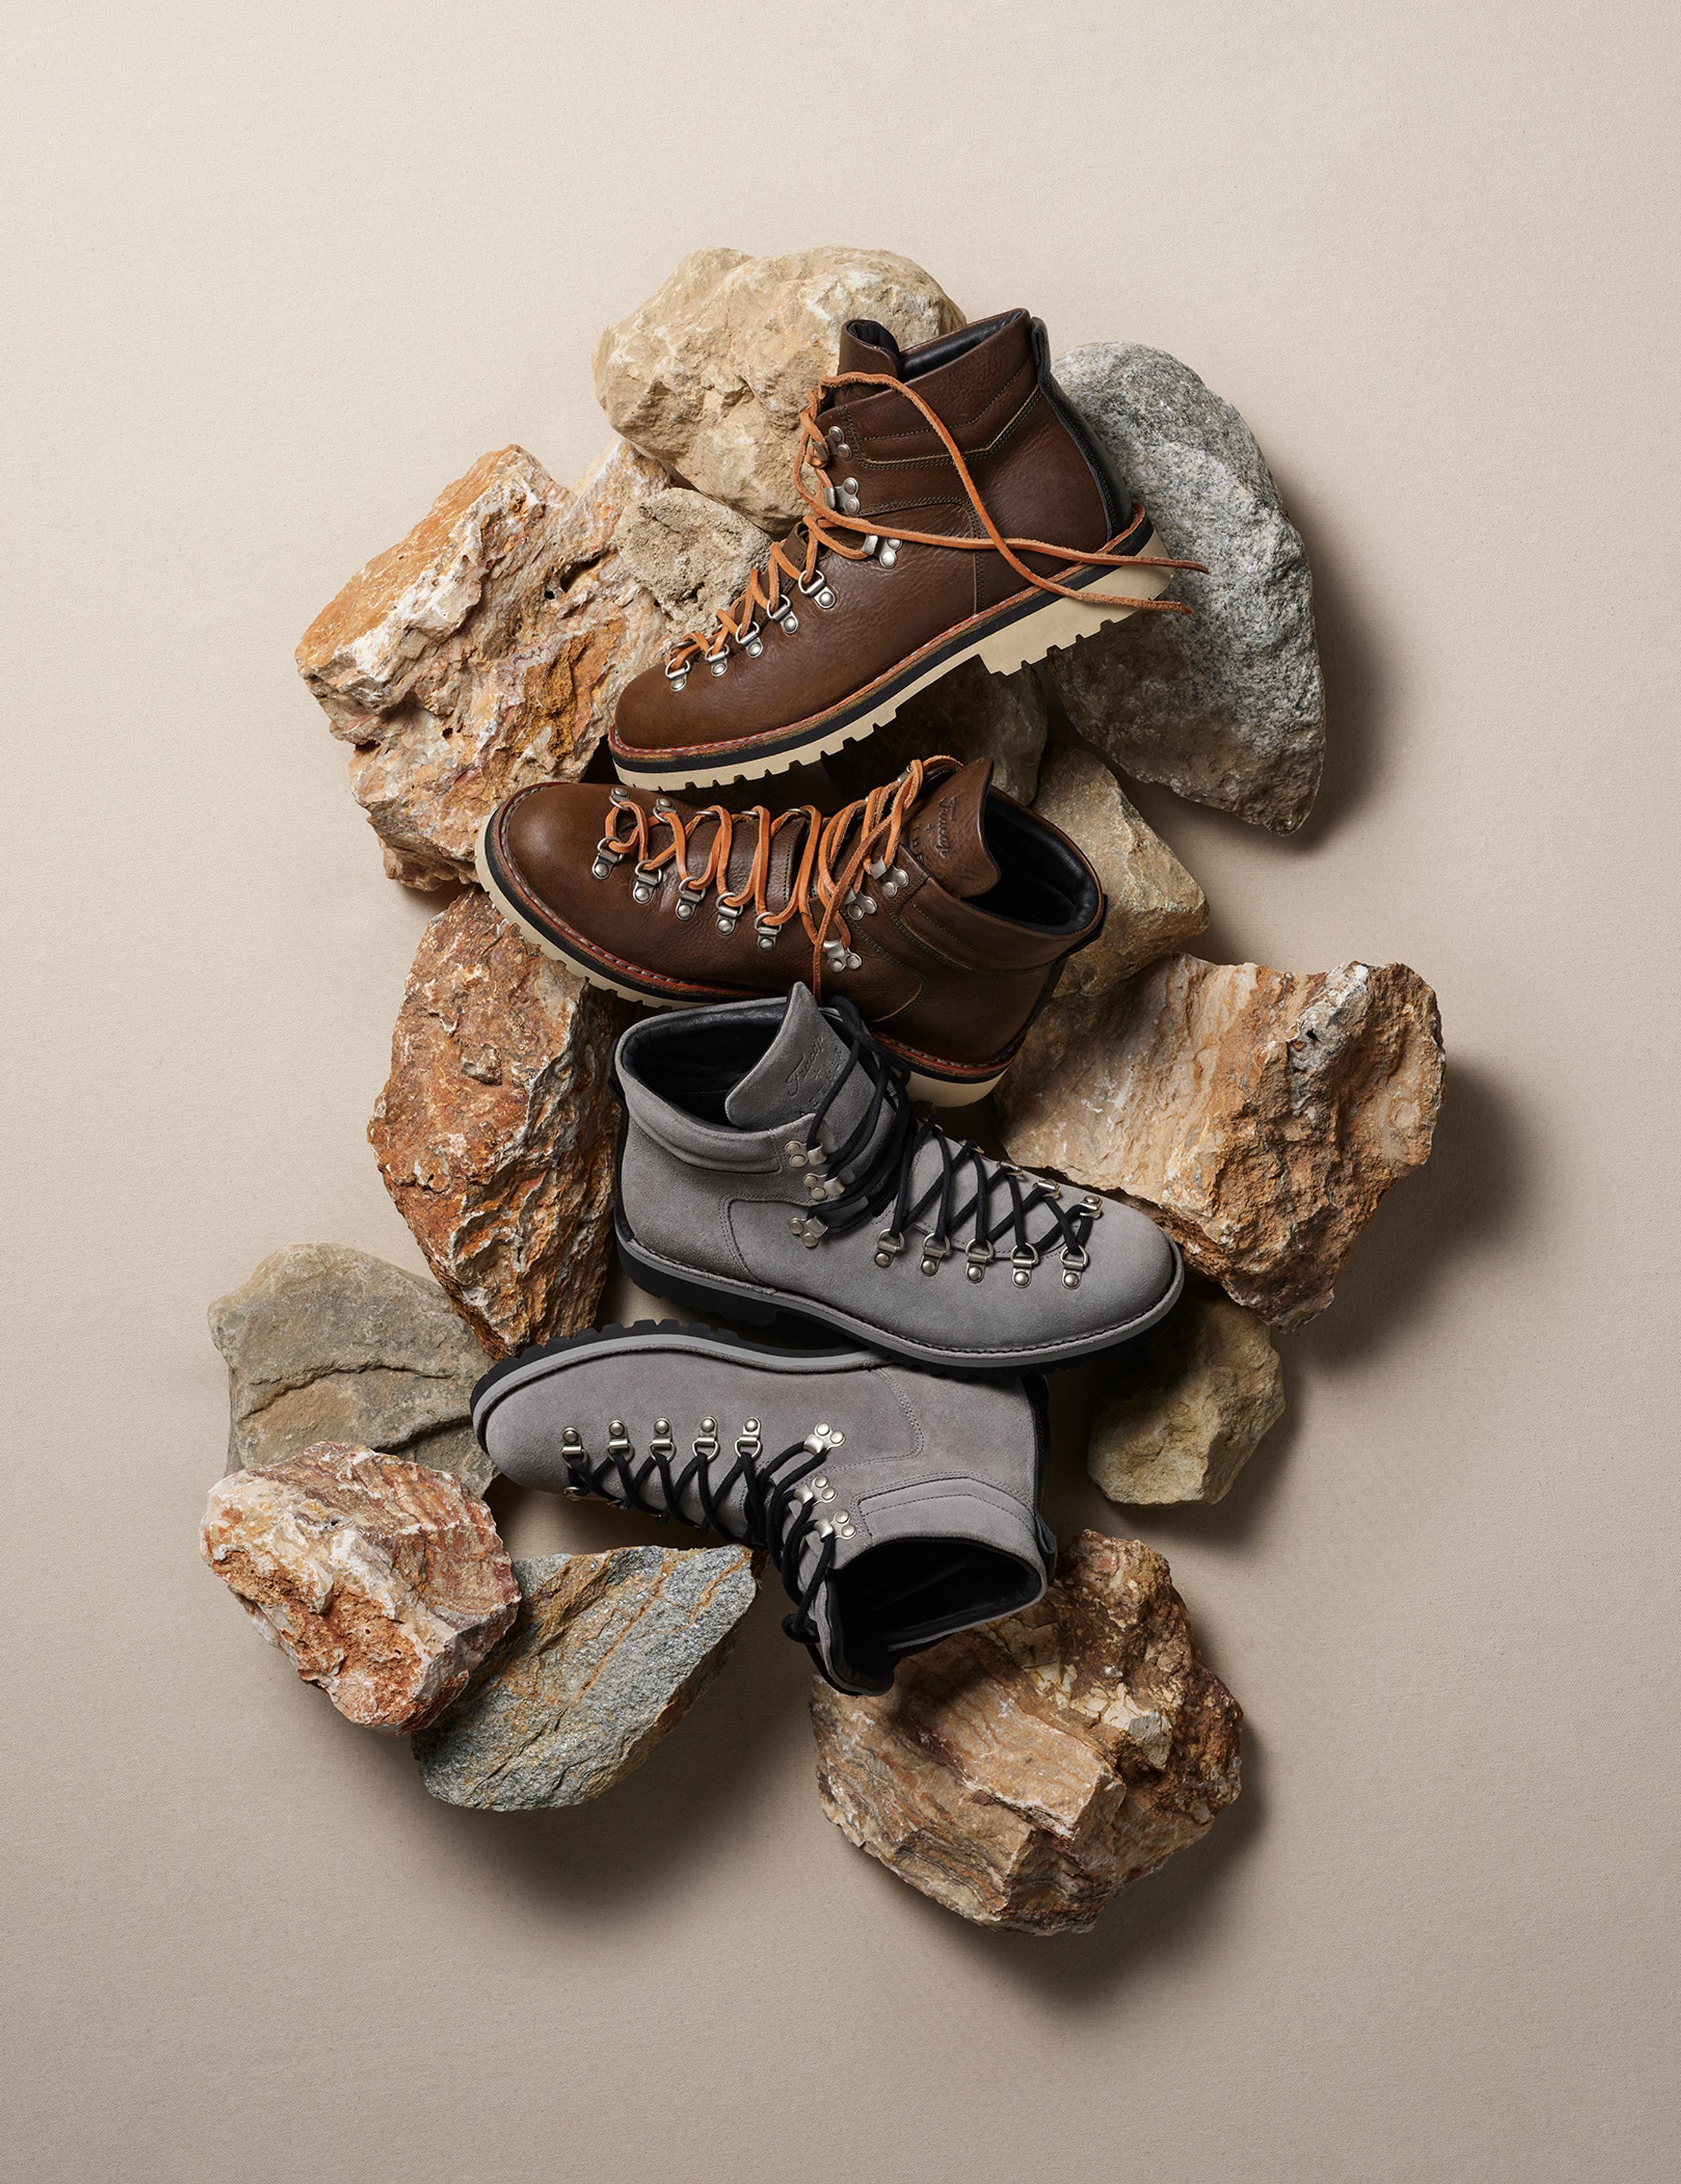 Studio photo of Dolomite Boots arranged on large rocks